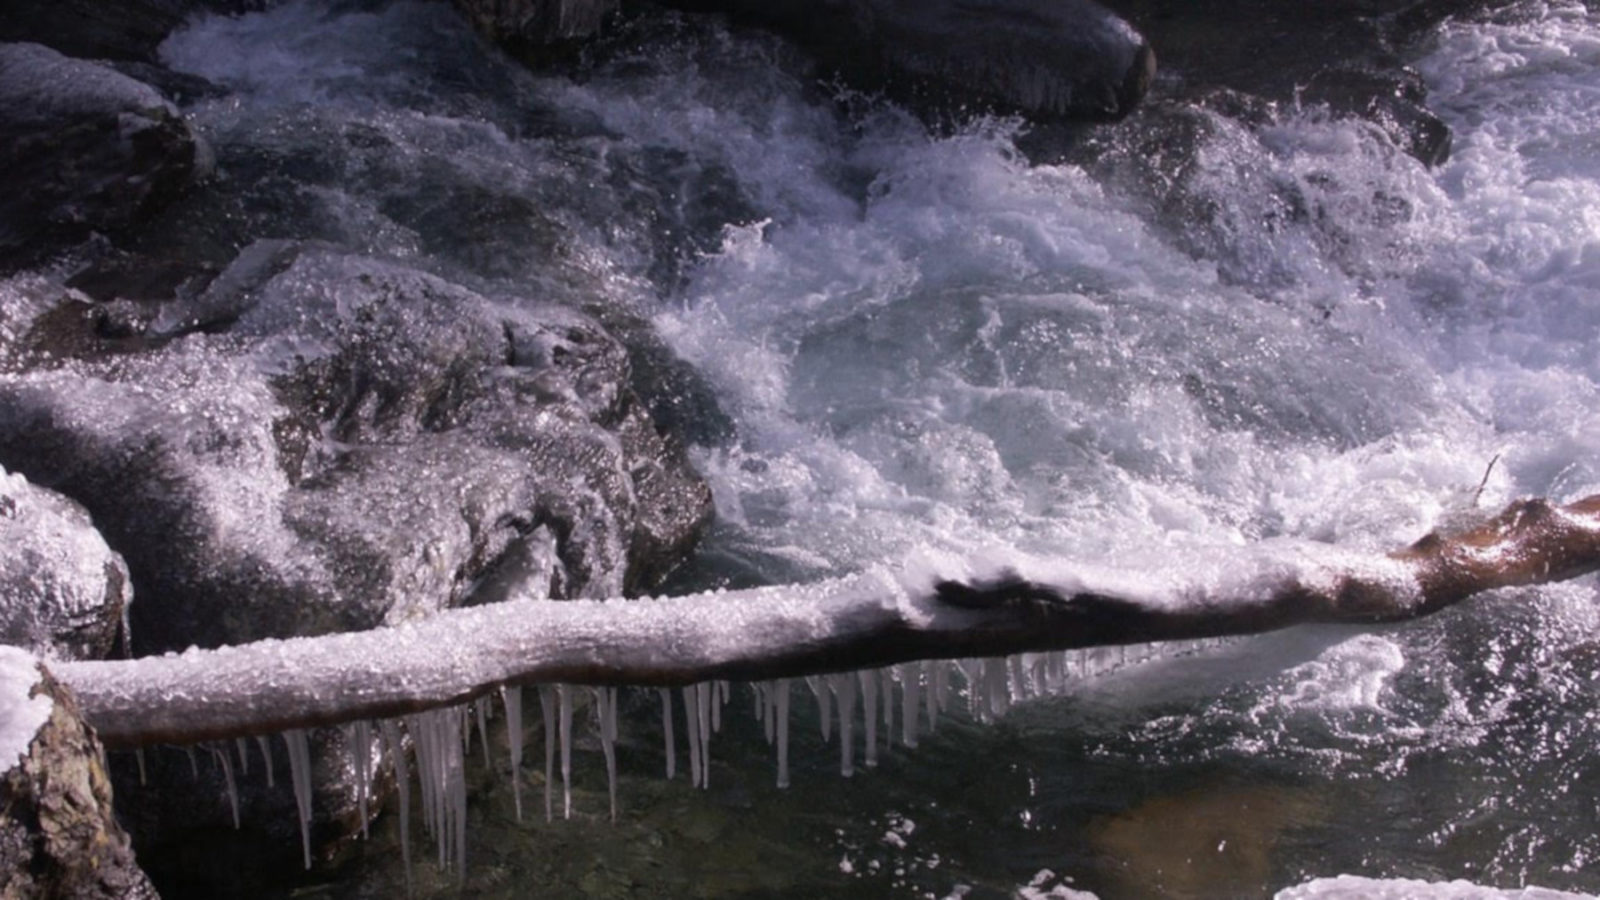 Ice caps foaming water at Bash Bish Falls.